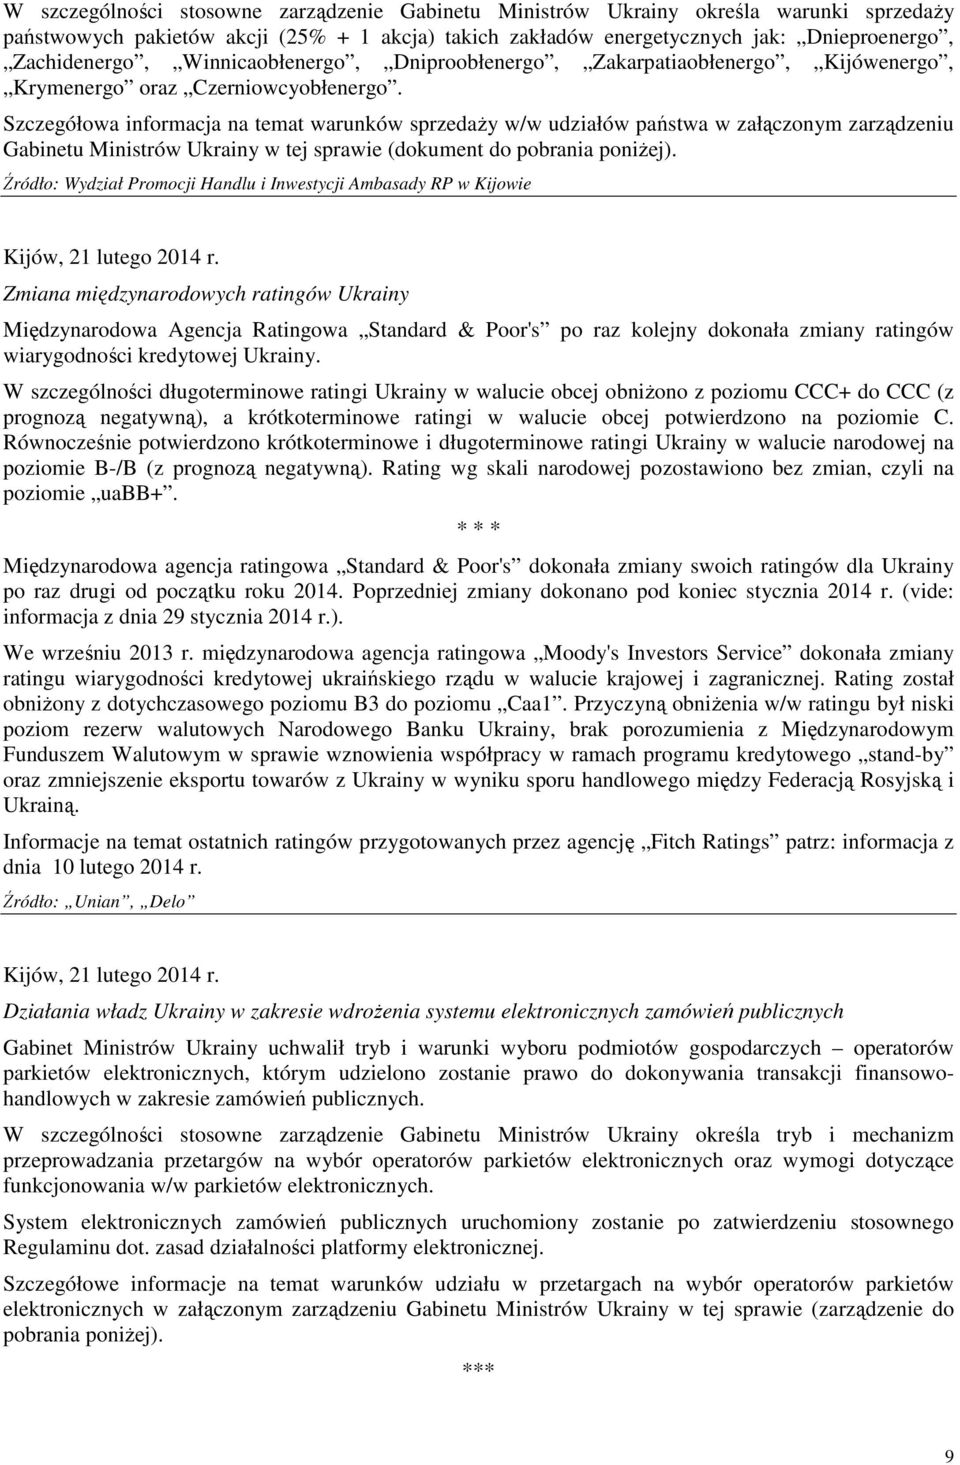 Szczegółowa informacja na temat warunków sprzedaŝy w/w udziałów państwa w załączonym zarządzeniu Gabinetu Ministrów Ukrainy w tej sprawie (dokument do pobrania poniŝej).